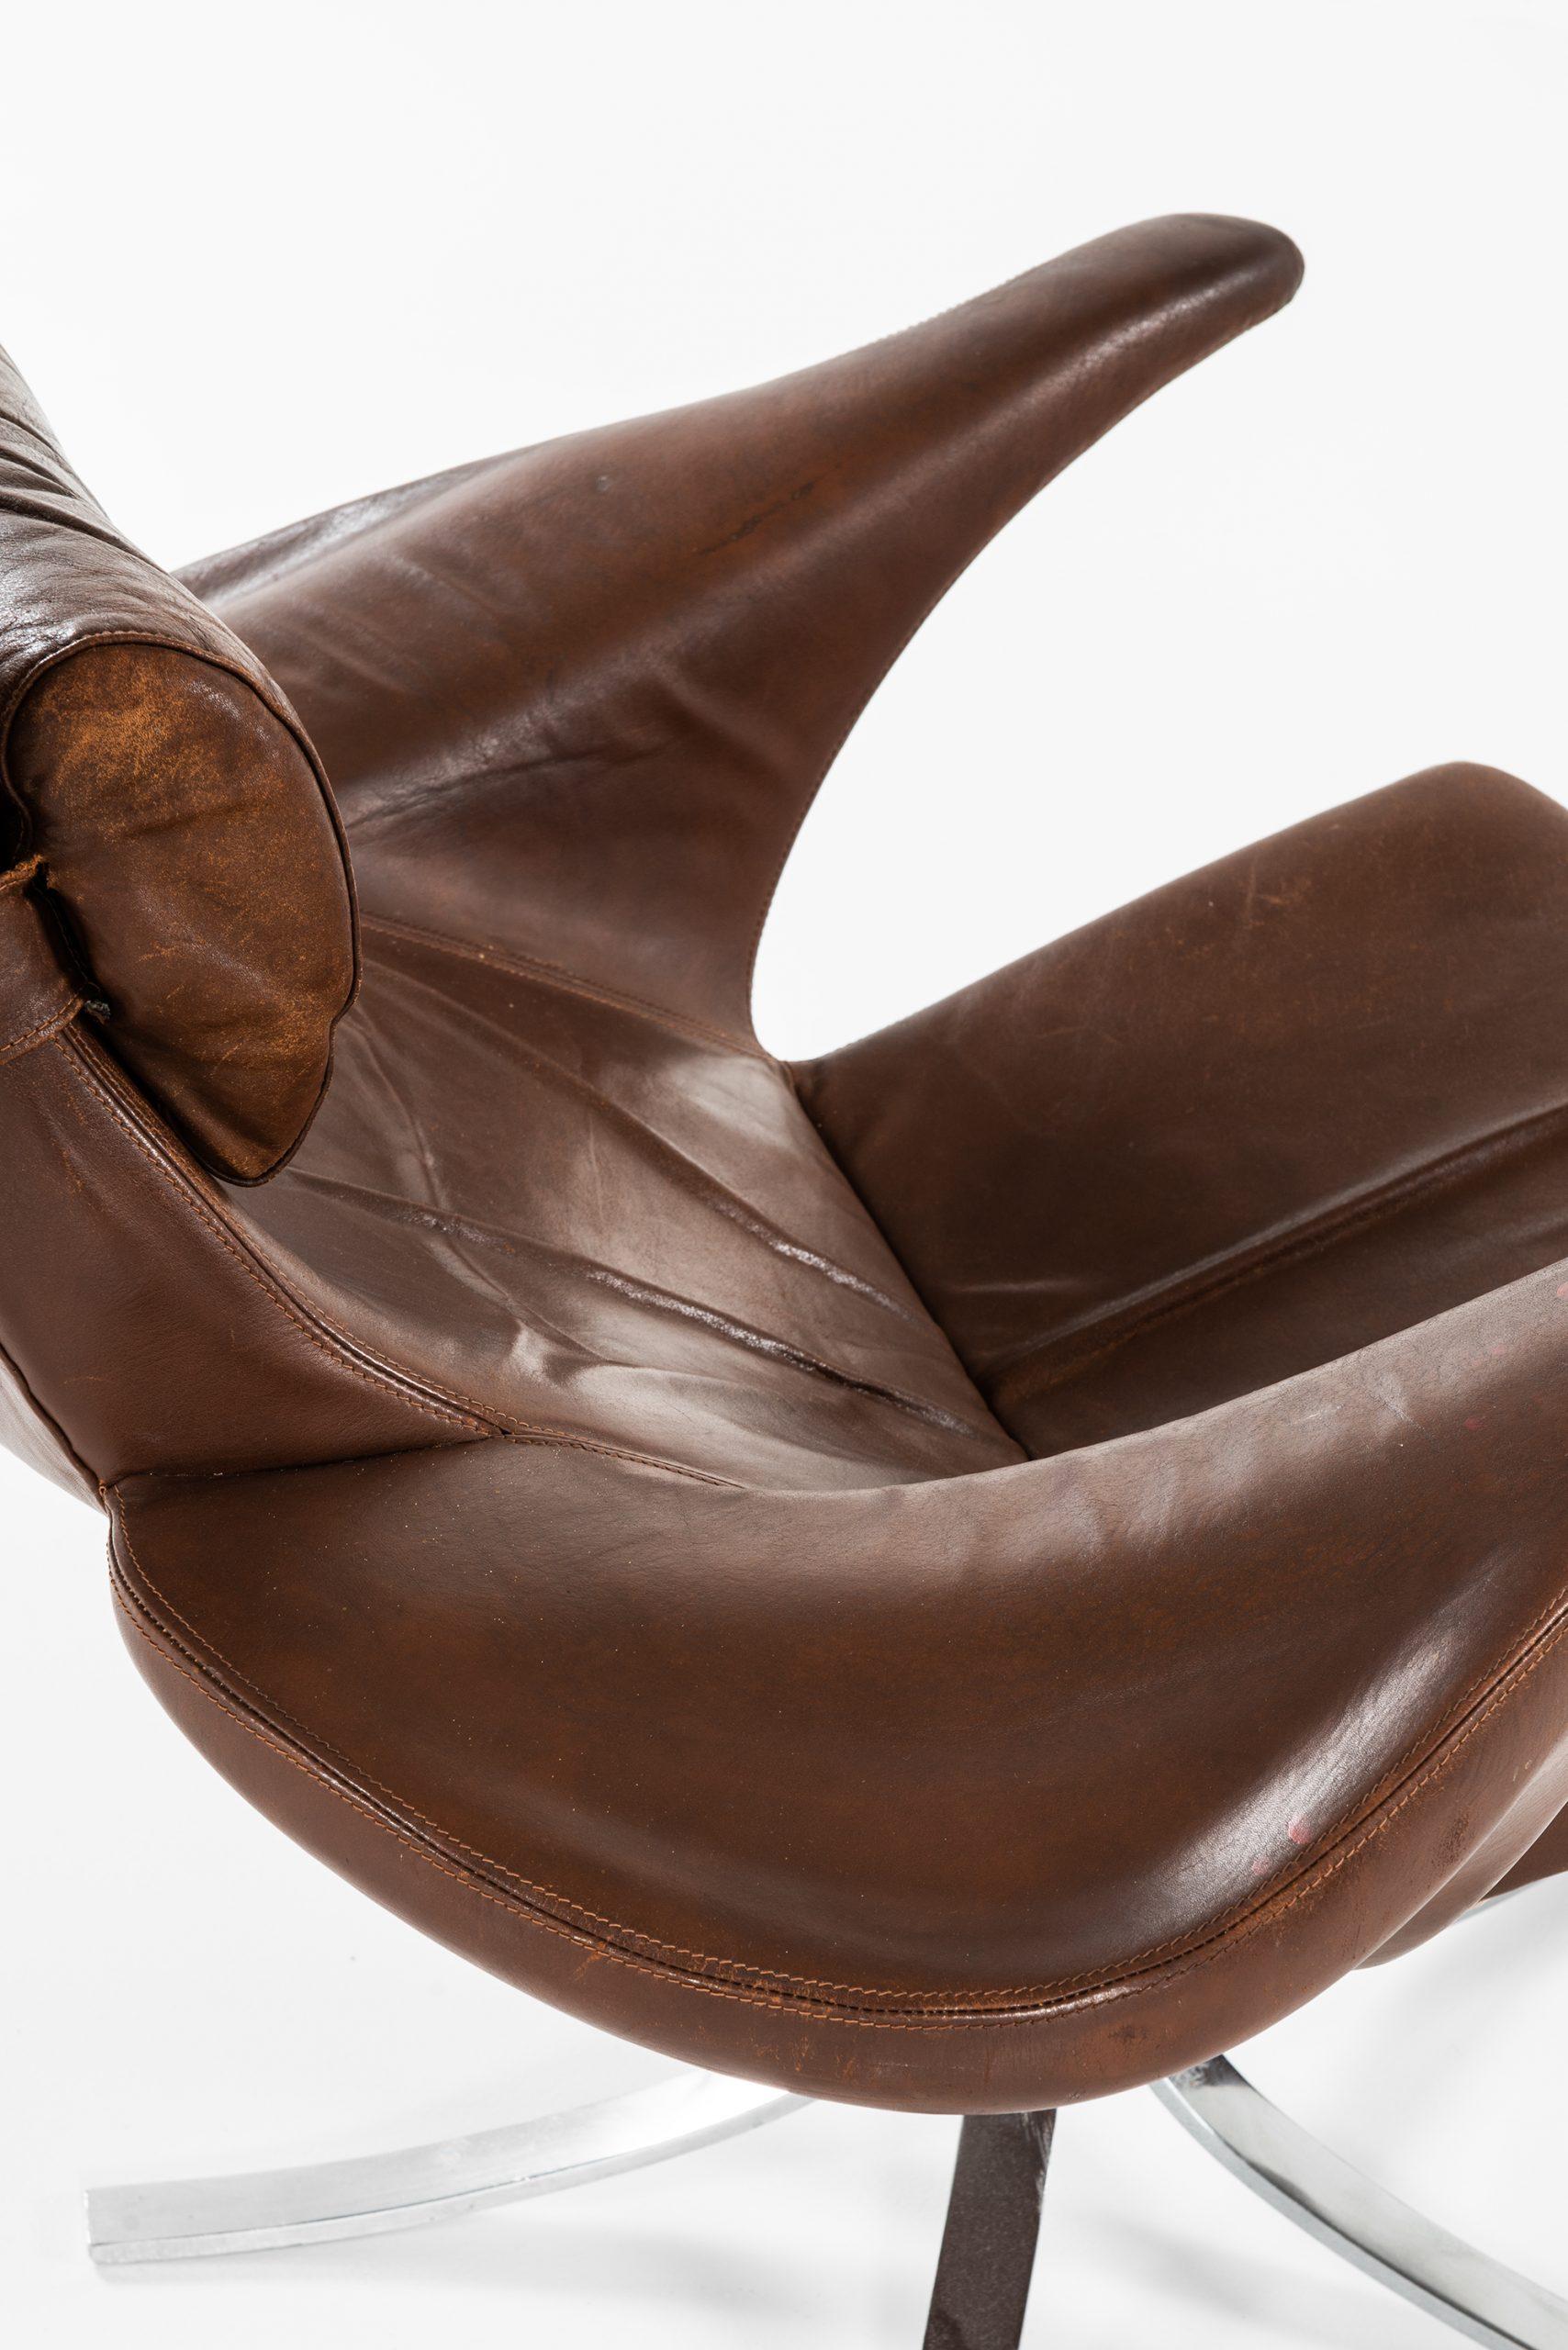 Gösta Berg Easy Chair with Stool Model Måsen / Seagull by Fritz Hansen For Sale 3